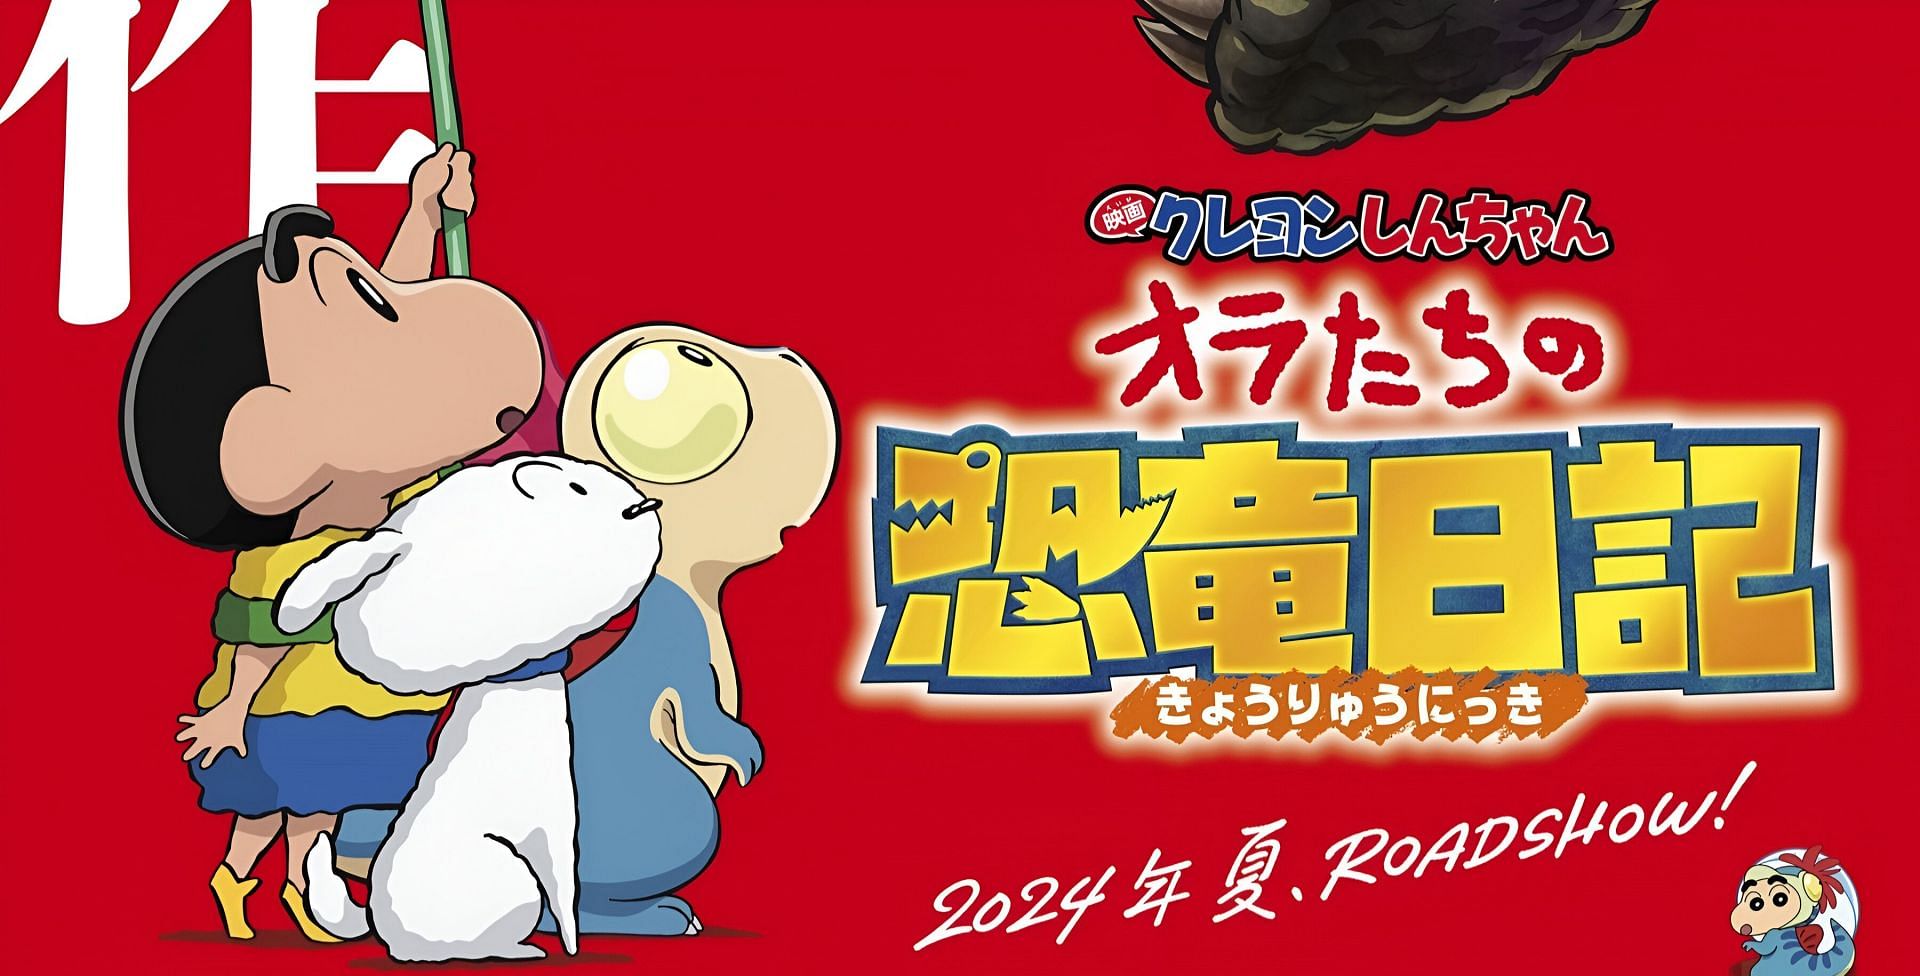 Crayon Shin-chan Movie 32: Ora-tachi no Kyouyuu Nikki main poster (Image via Shin-Ei Animation)